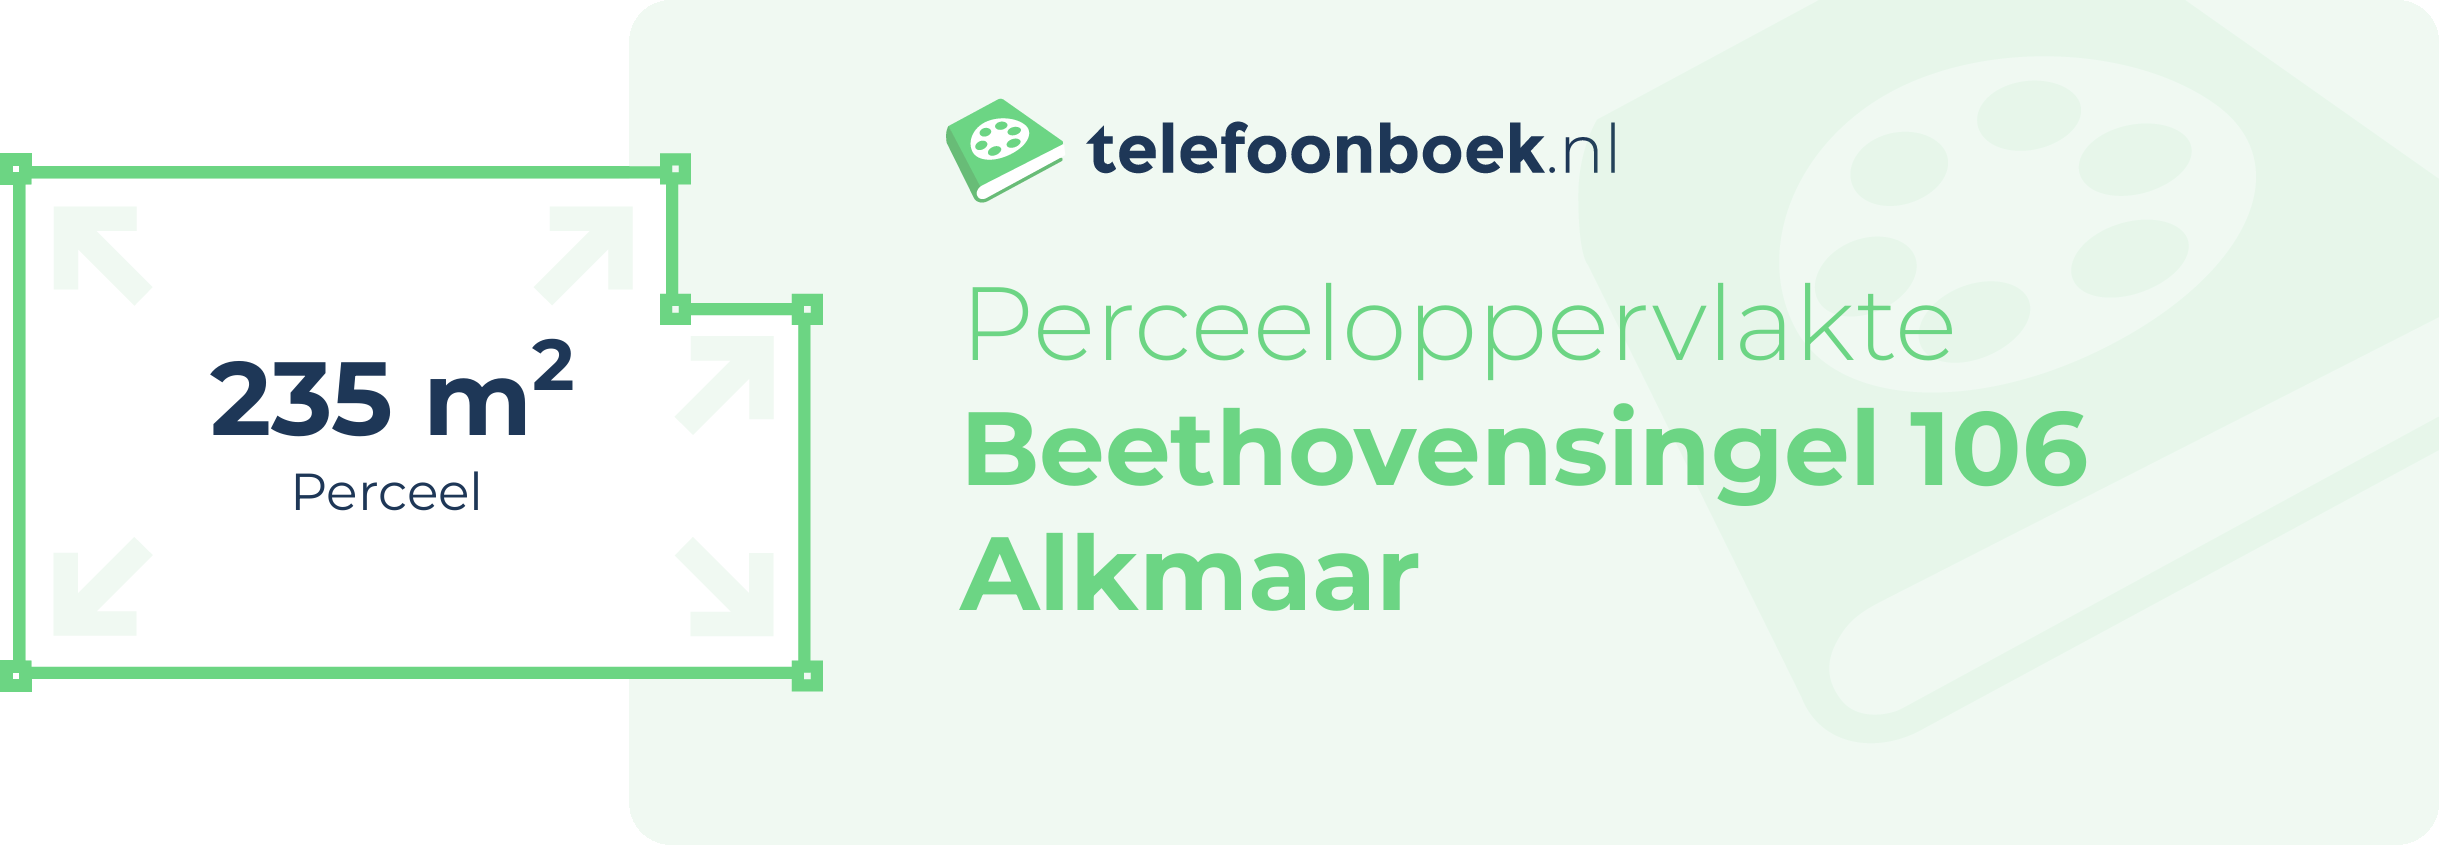 Perceeloppervlakte Beethovensingel 106 Alkmaar